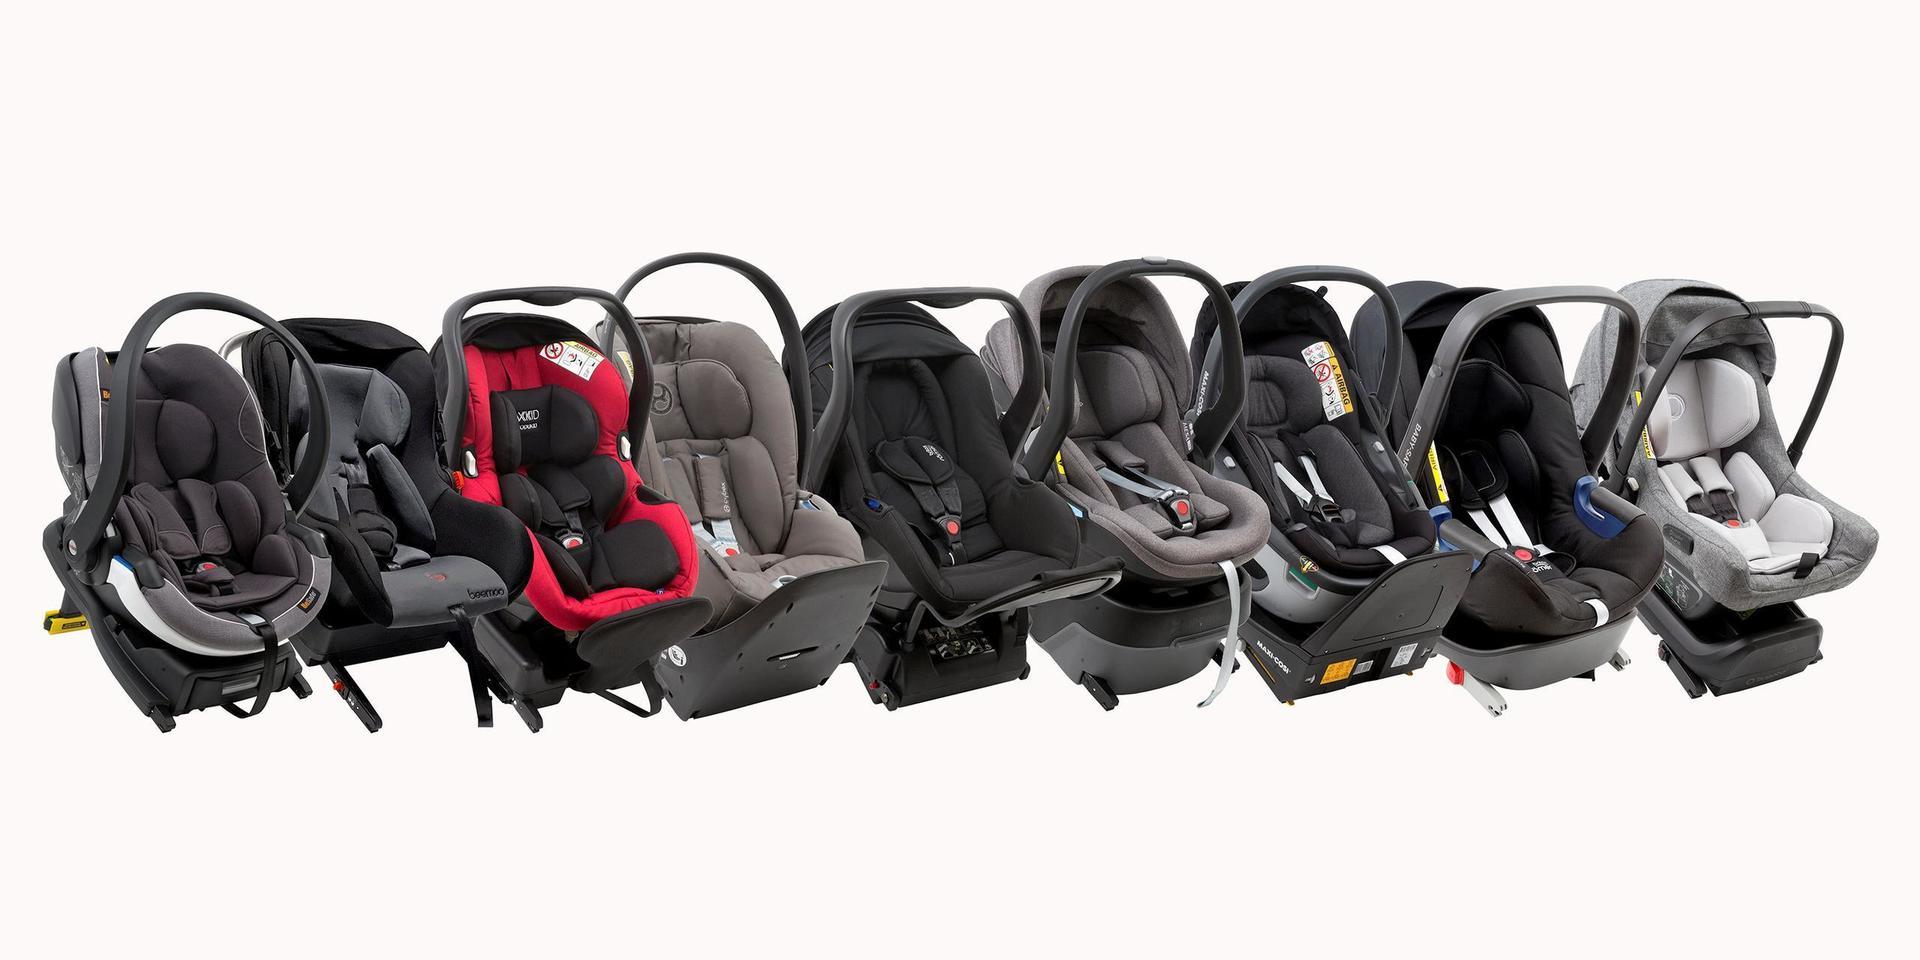 Testfakta har testat nio babyskydd från välkända varumärkena på den svenska och norska marknaden.